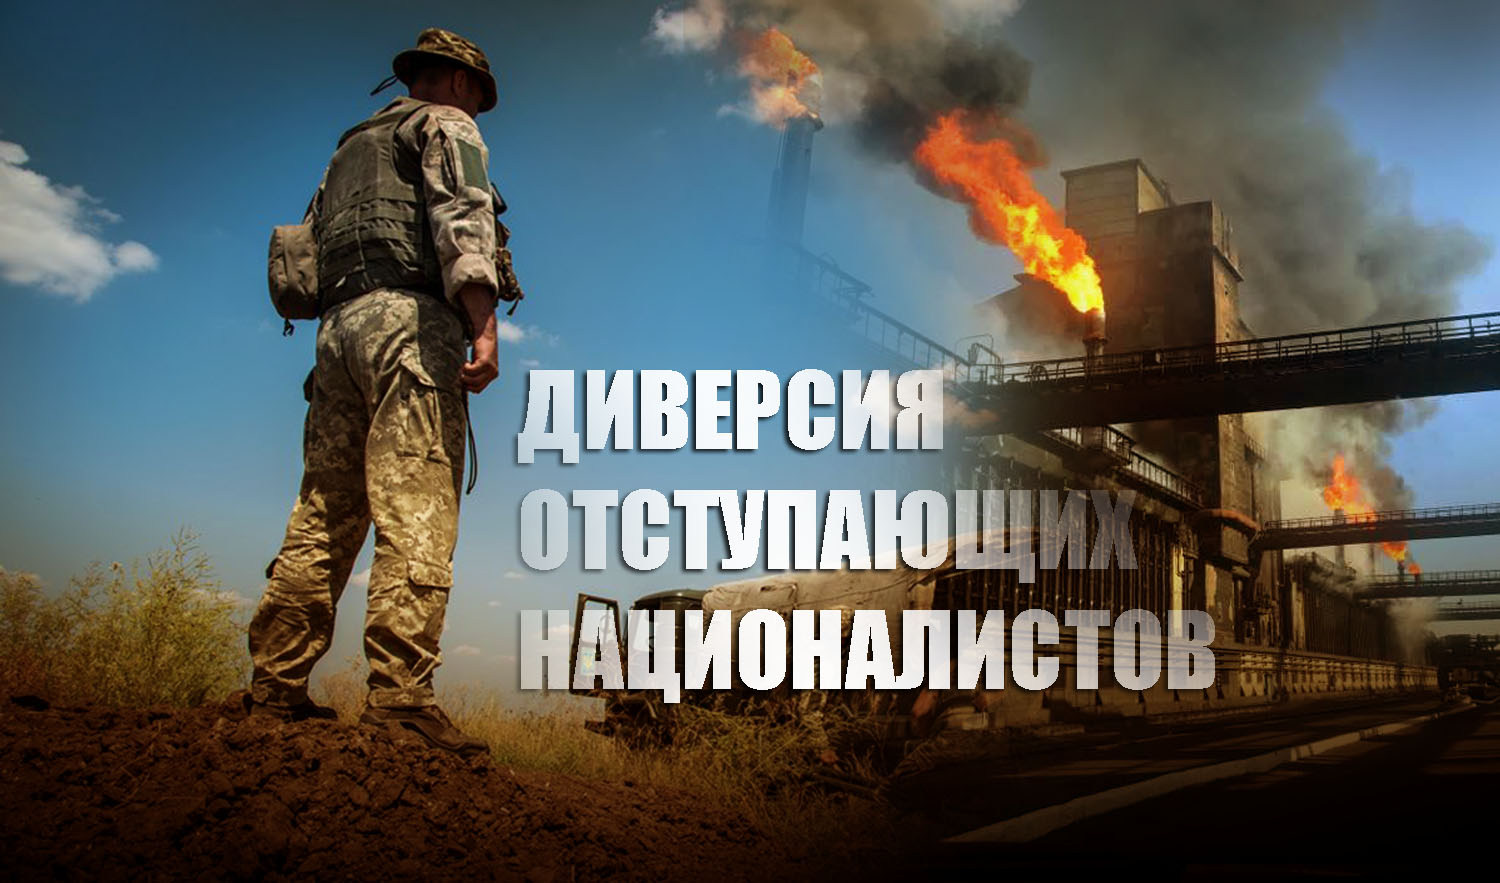 Украинские боевики нацбатов устроили диверсию на химическом комбинате под Донецком